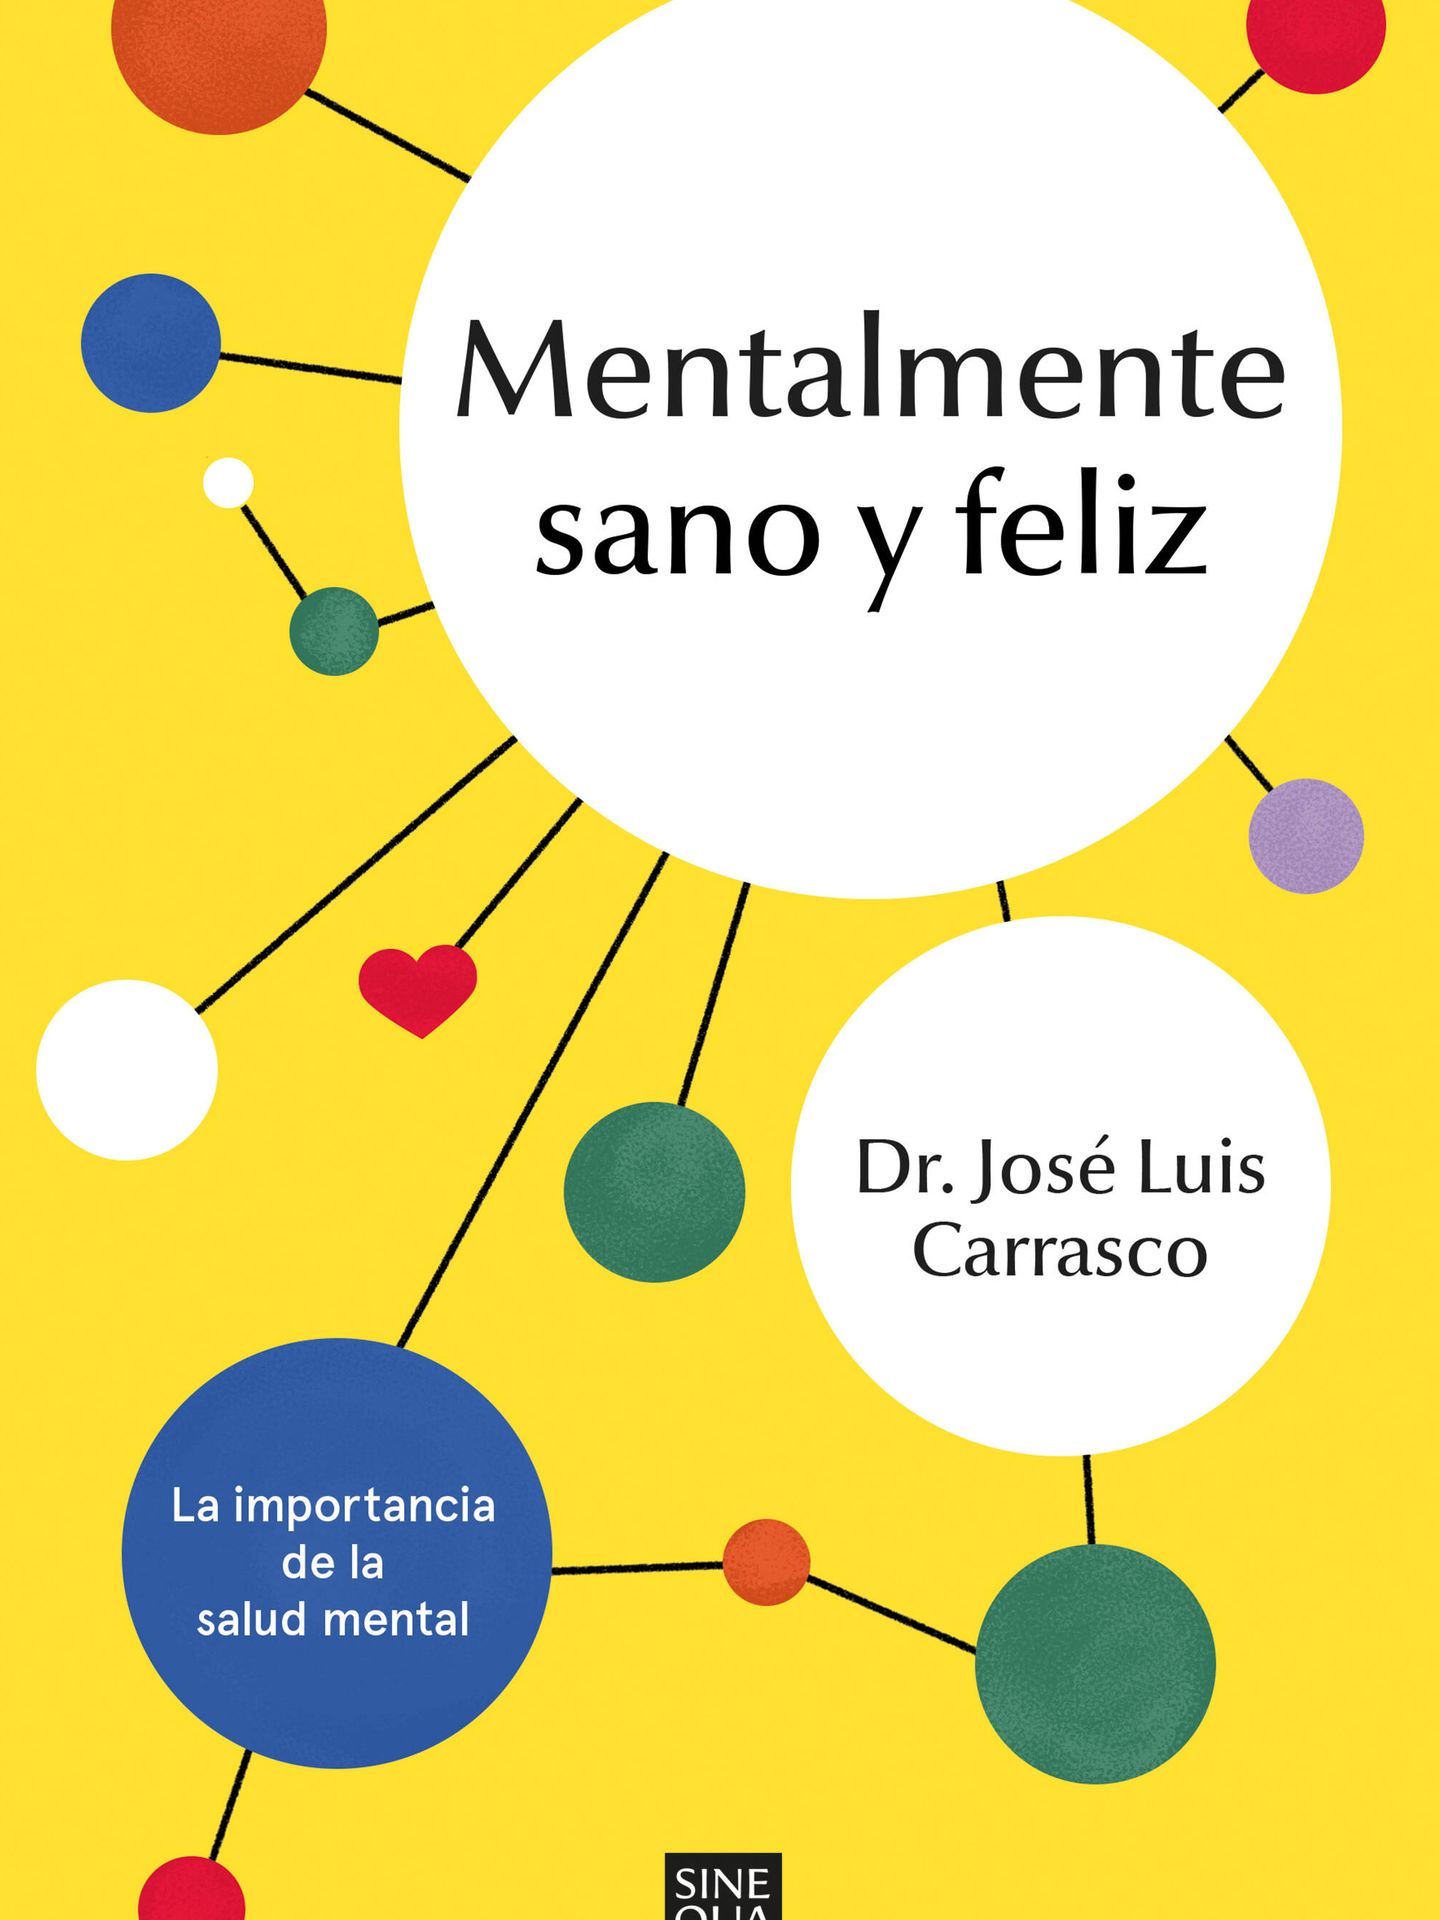 El nuevo libro del doctor Carrasco.